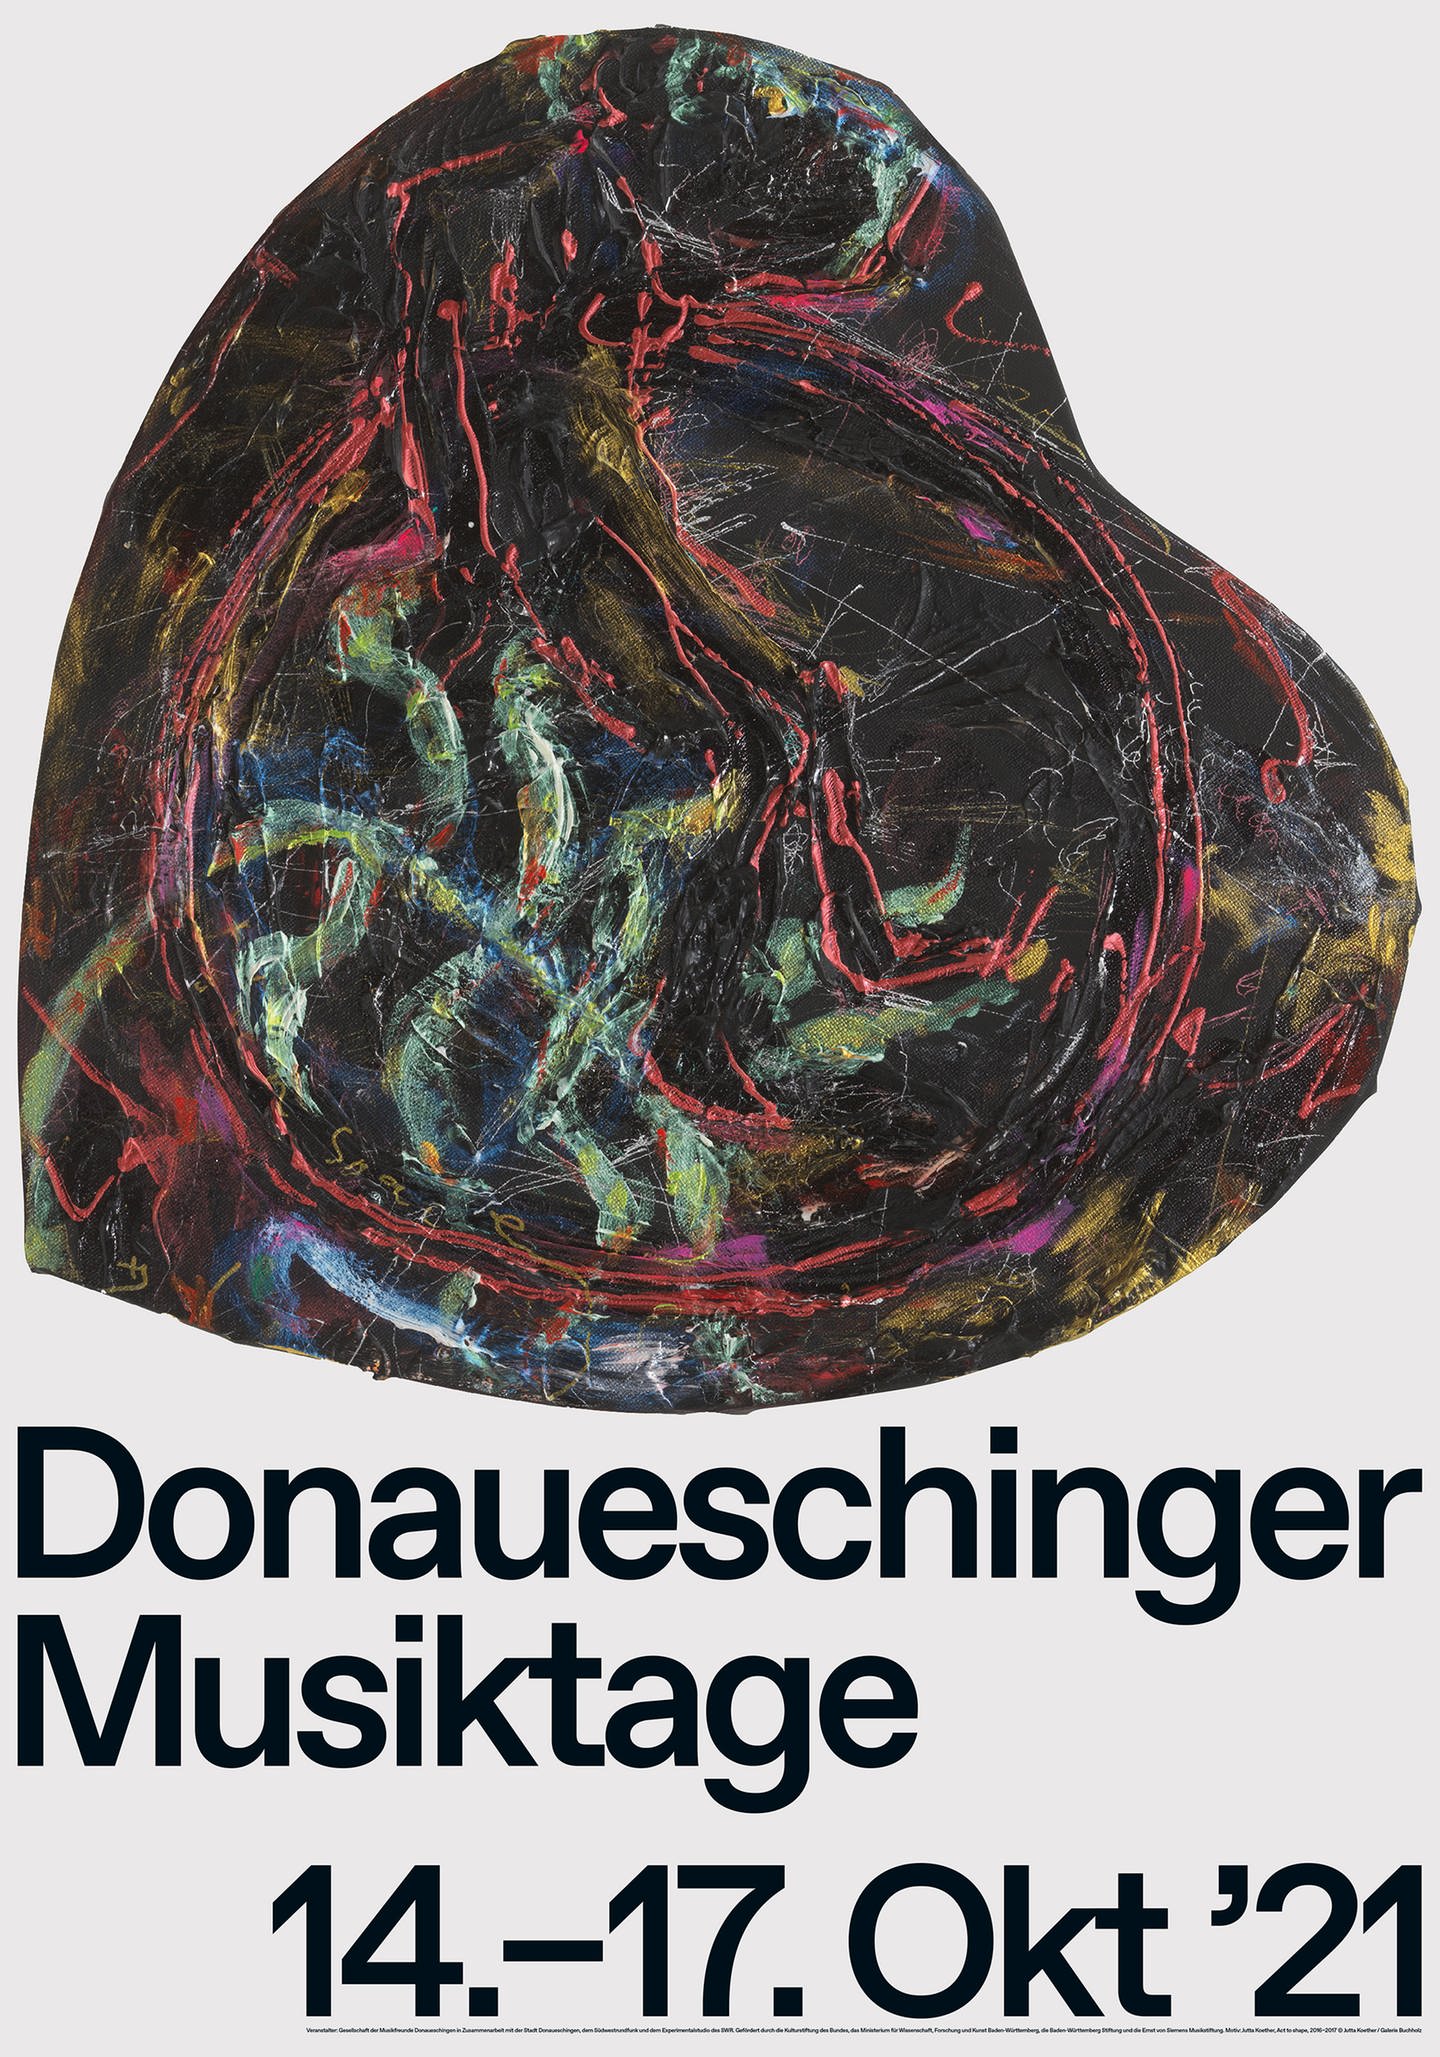 Künstlerplakat zu den Donaueschinger Musiktagen 2021 von Jutta Koether